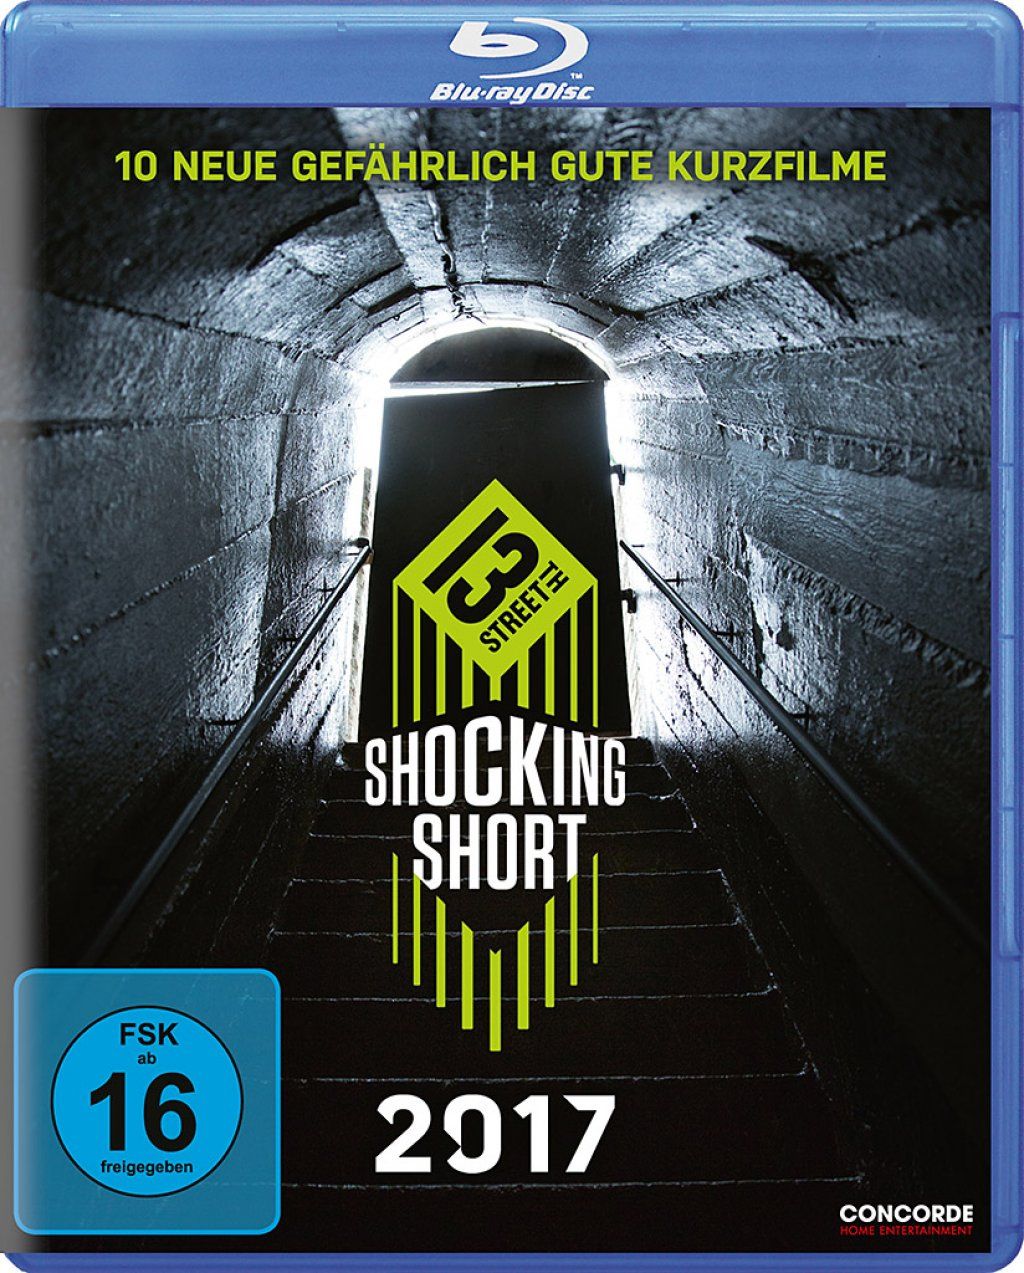 Shocking Shorts 2017 - 10 neue gefährlich gute Kurzfilme (BLURAY)